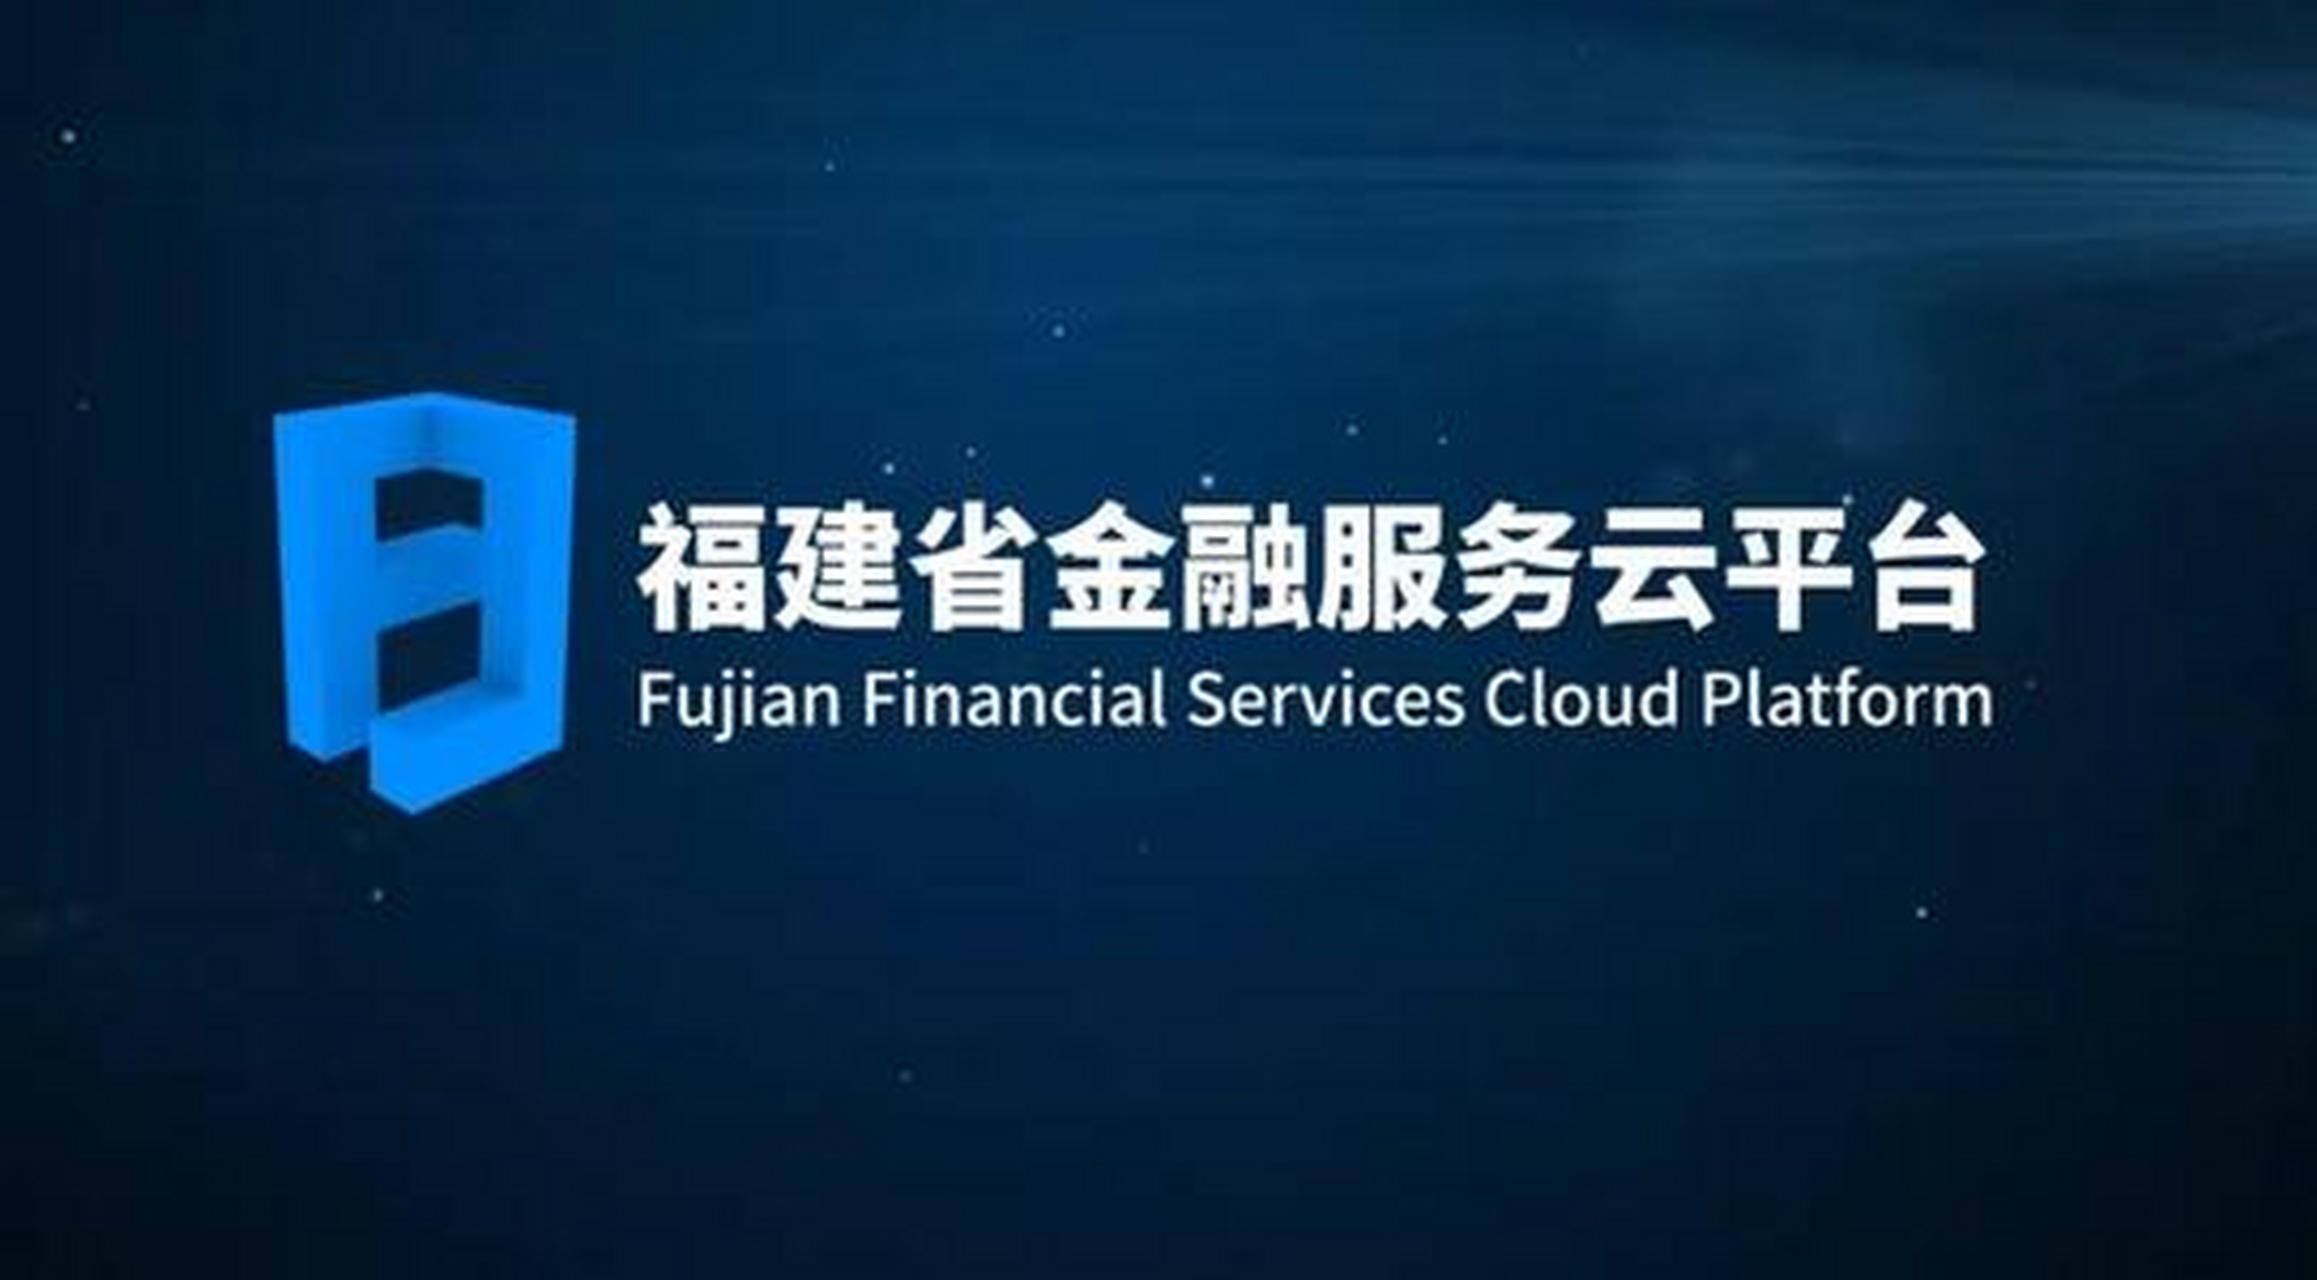 福建省金融服务云平台通过数字福建 金融科技 产品服务 惠企政策的